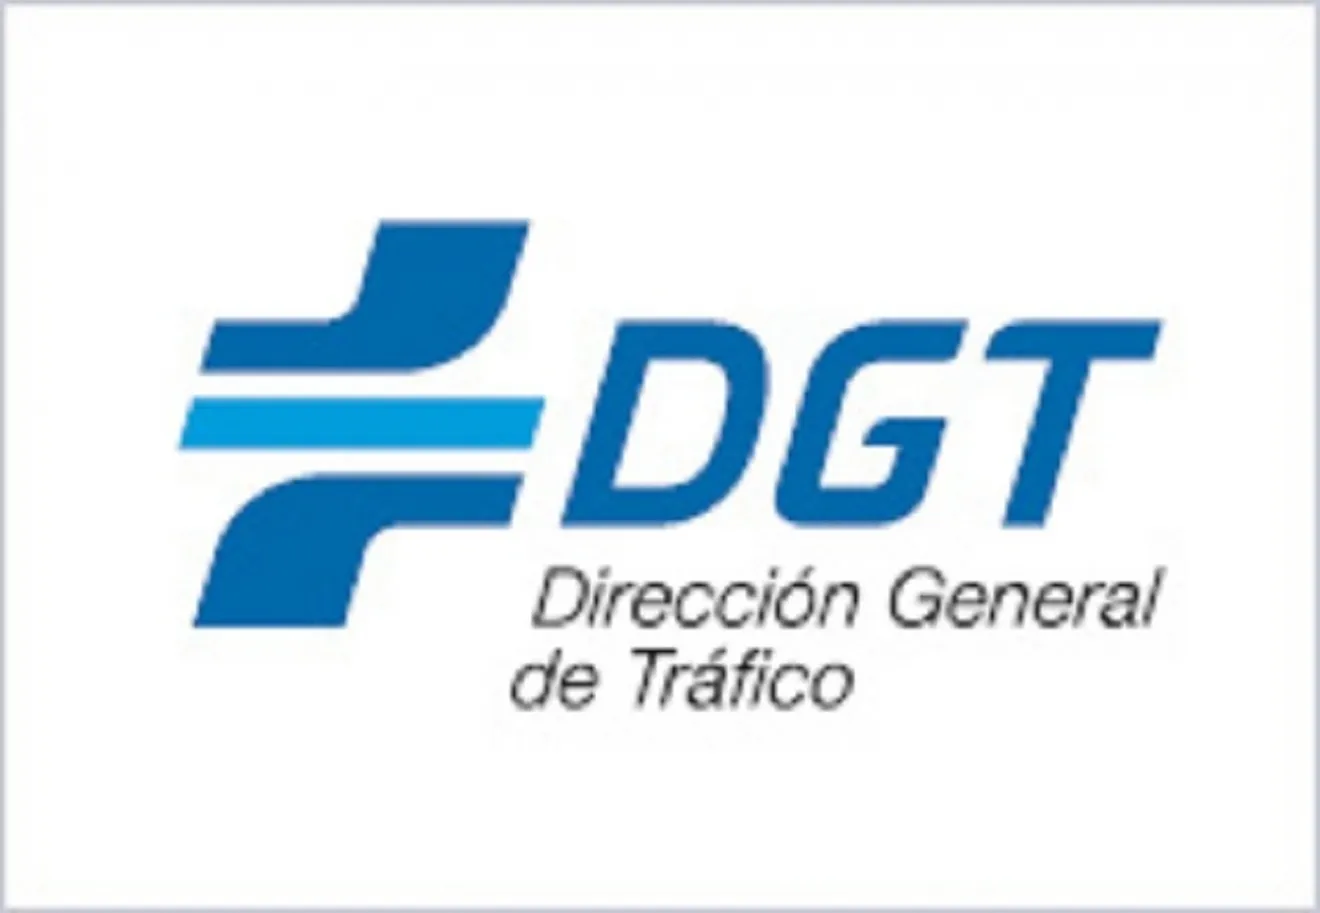 La Dirección General de Tráfico lanza una nueva campaña de Seguridad Vial Laboral